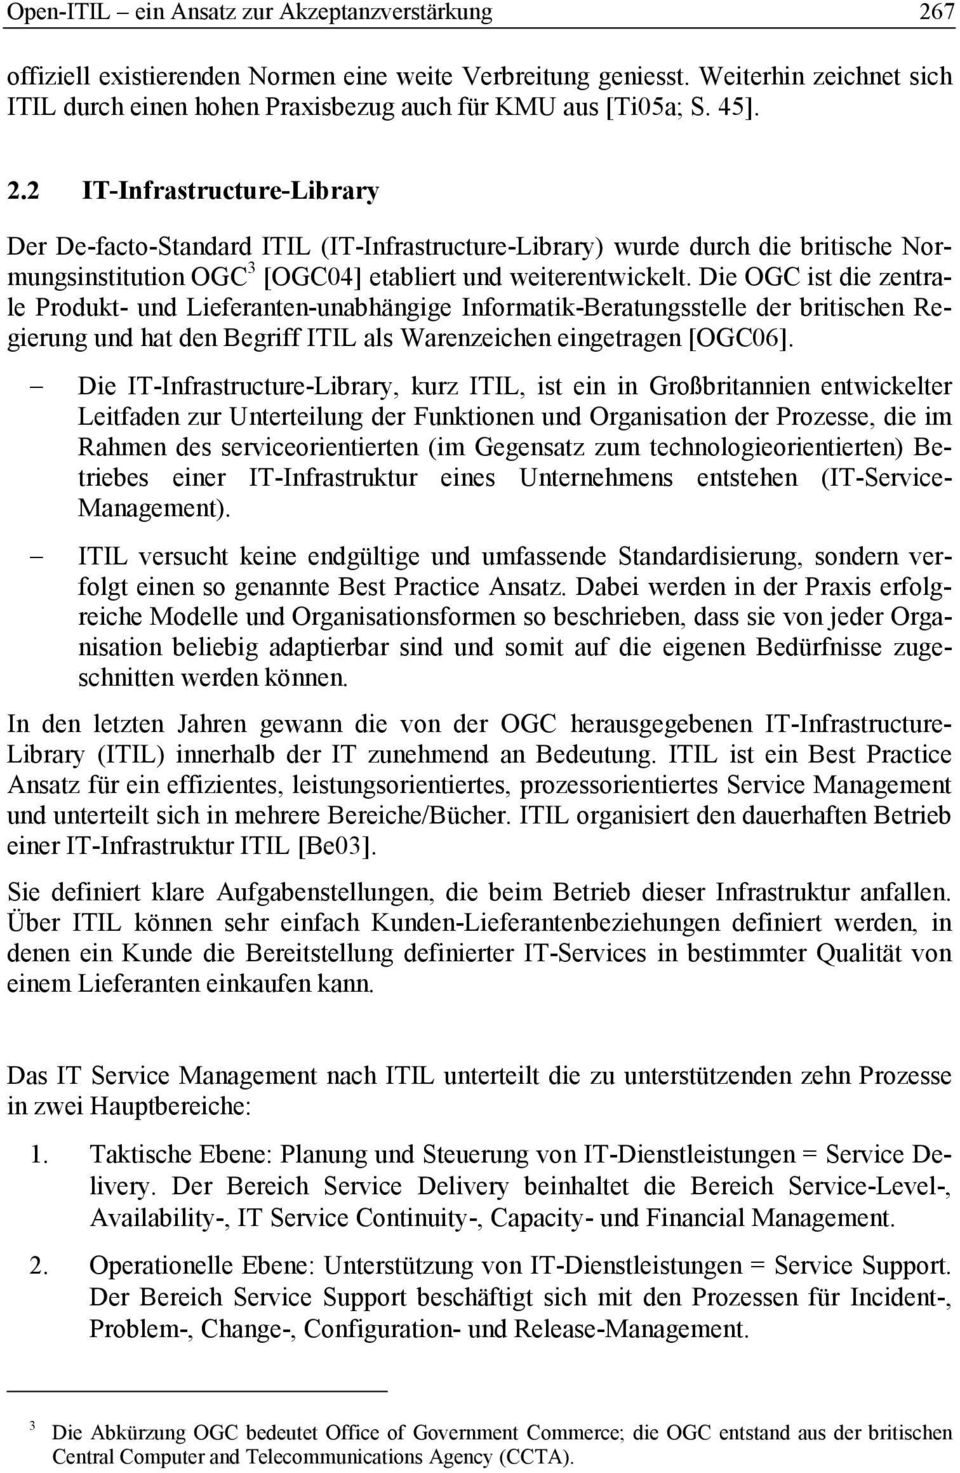 Die OGC ist die zentrale Produkt- und Lieferanten-unabhängige Informatik-Beratungsstelle der britischen Regierung und hat den Begriff ITIL als Warenzeichen eingetragen [OGC06].